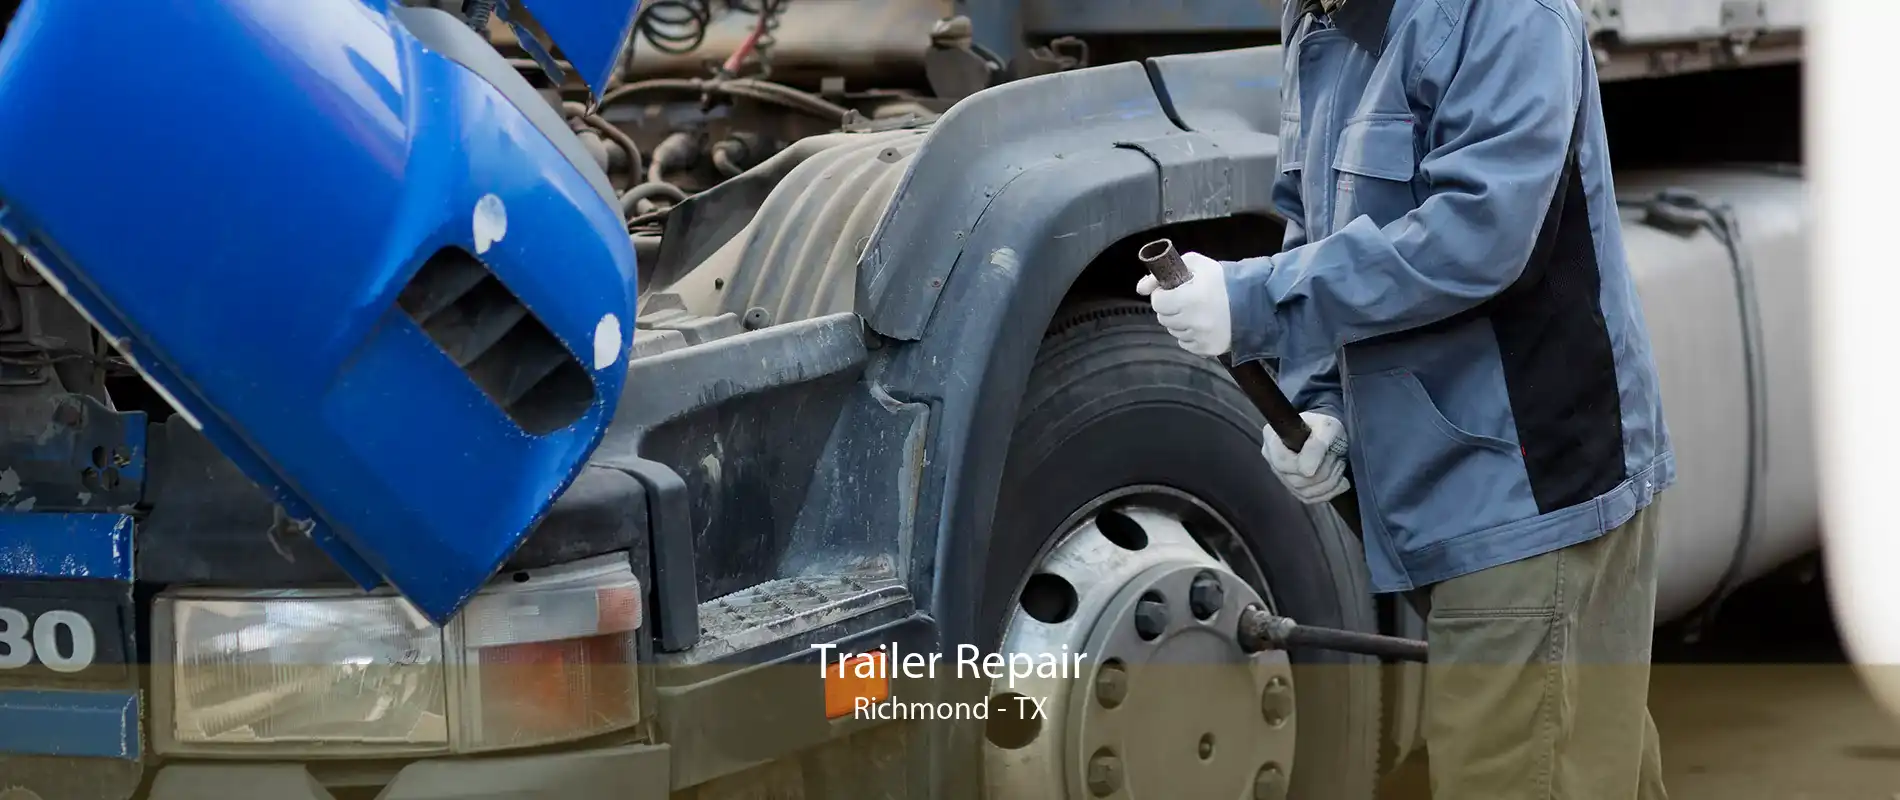 Trailer Repair Richmond - TX